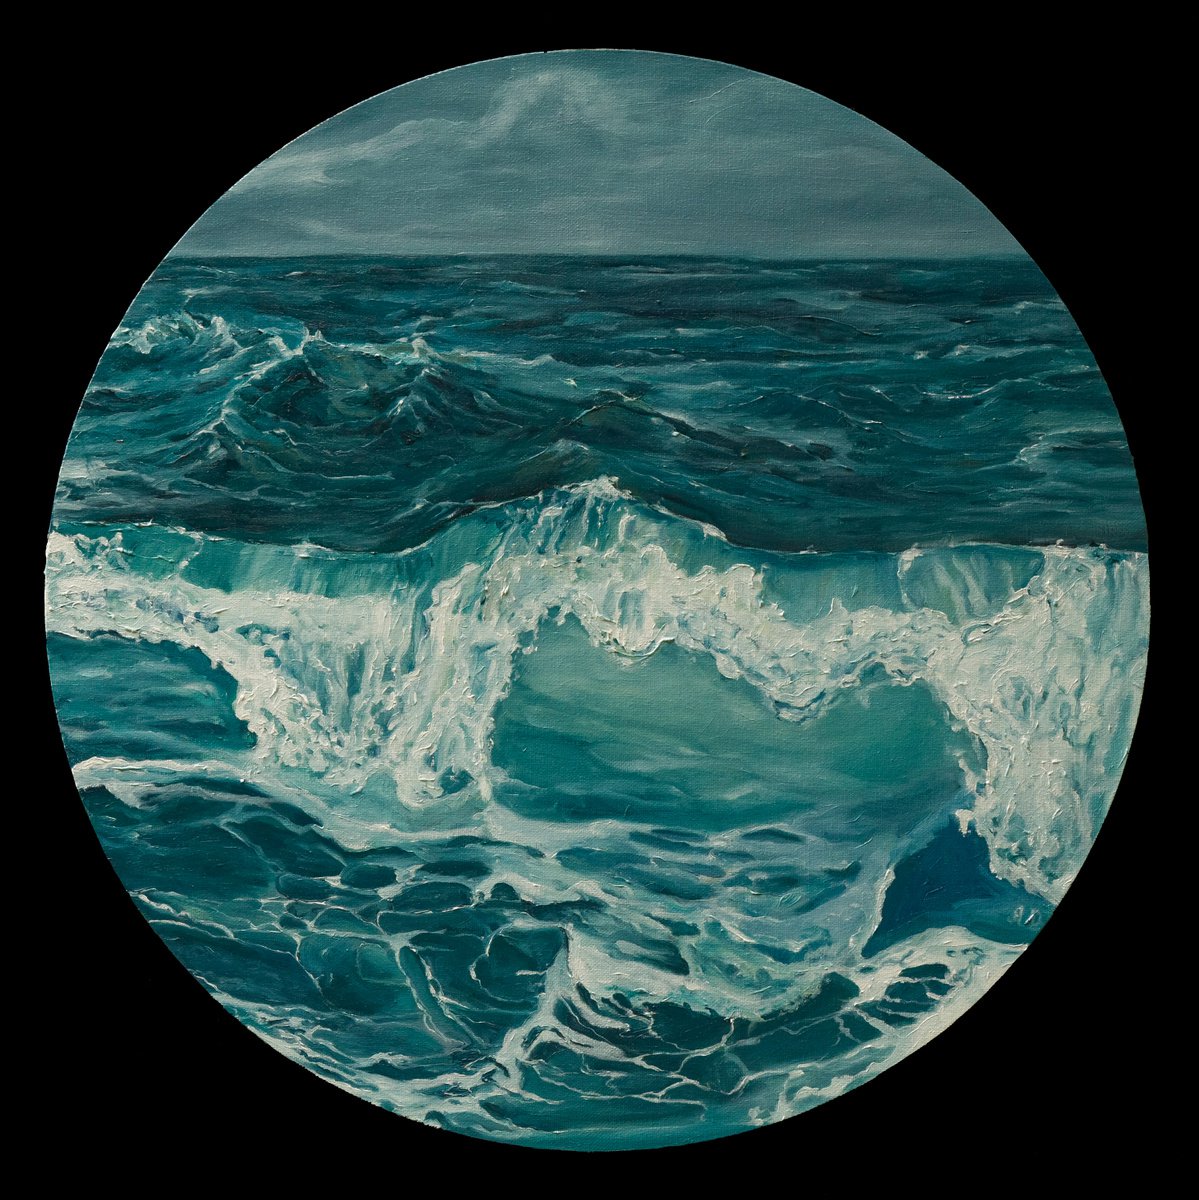 Moody Sea 6 by Amy Devlin